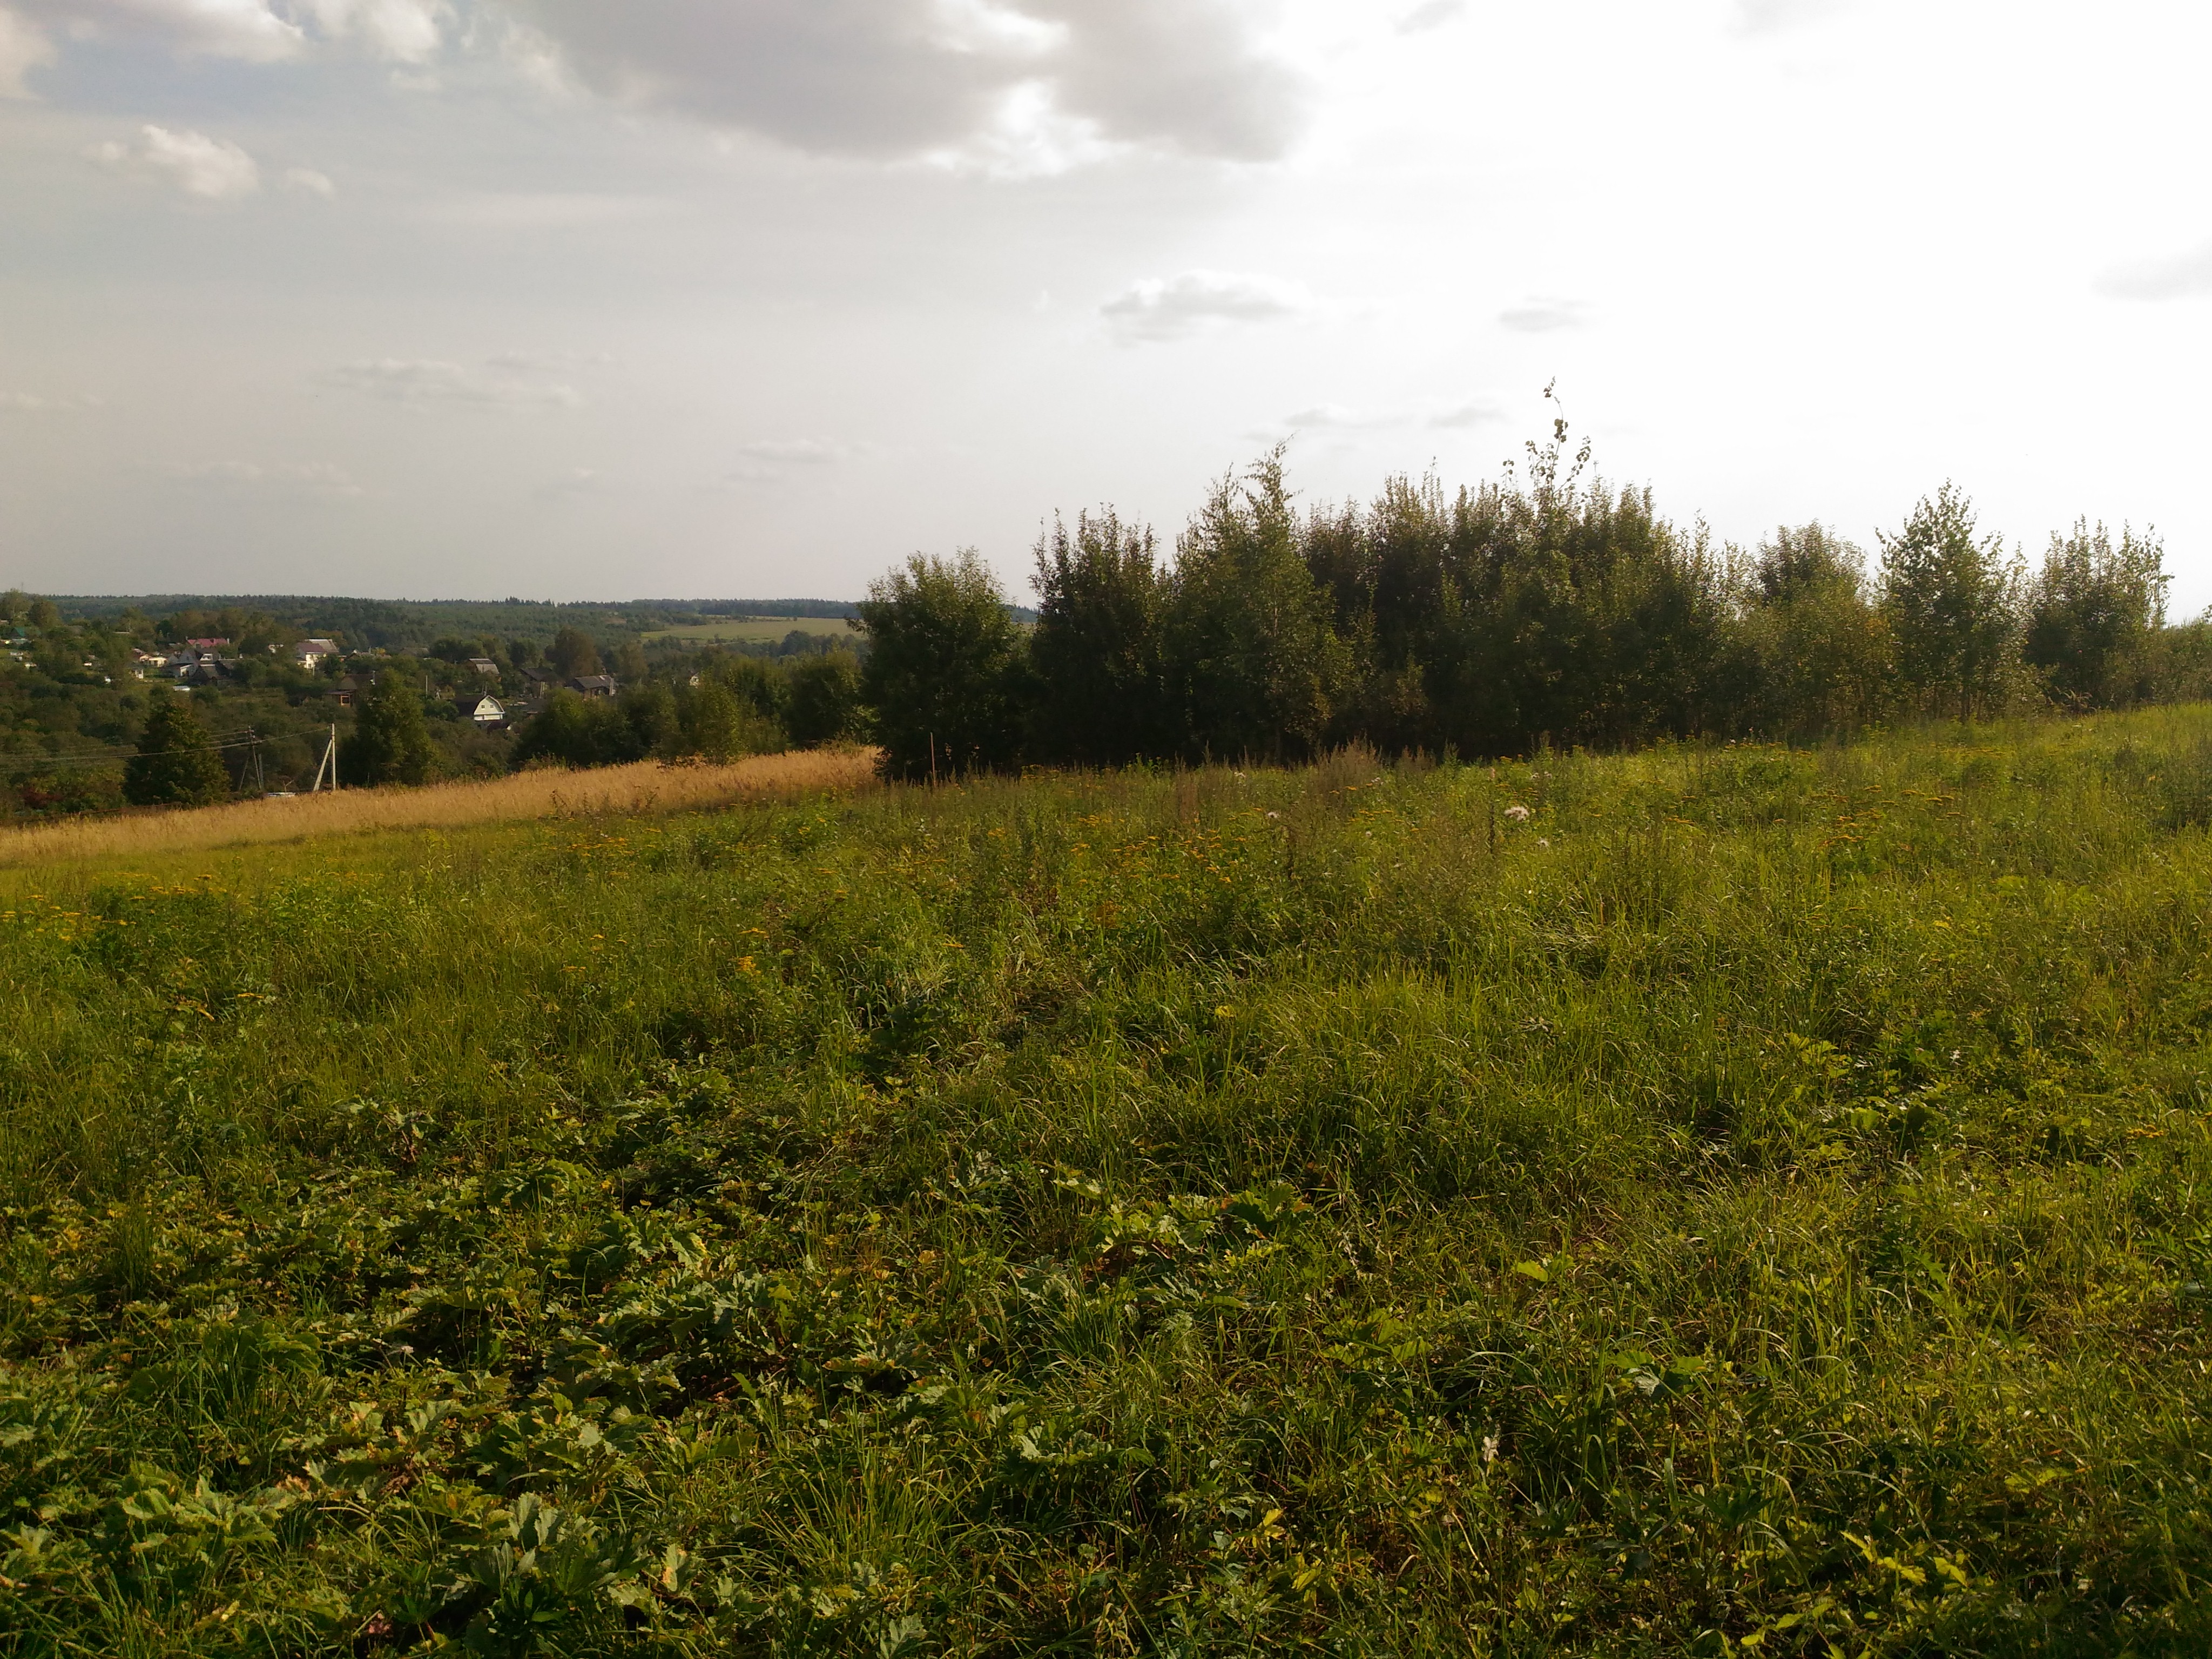 Продажа садового дома в деревне Ченцы по Волоколамскому шоссе СНТ Родник Волоколамского района и участком 7.5 соток.